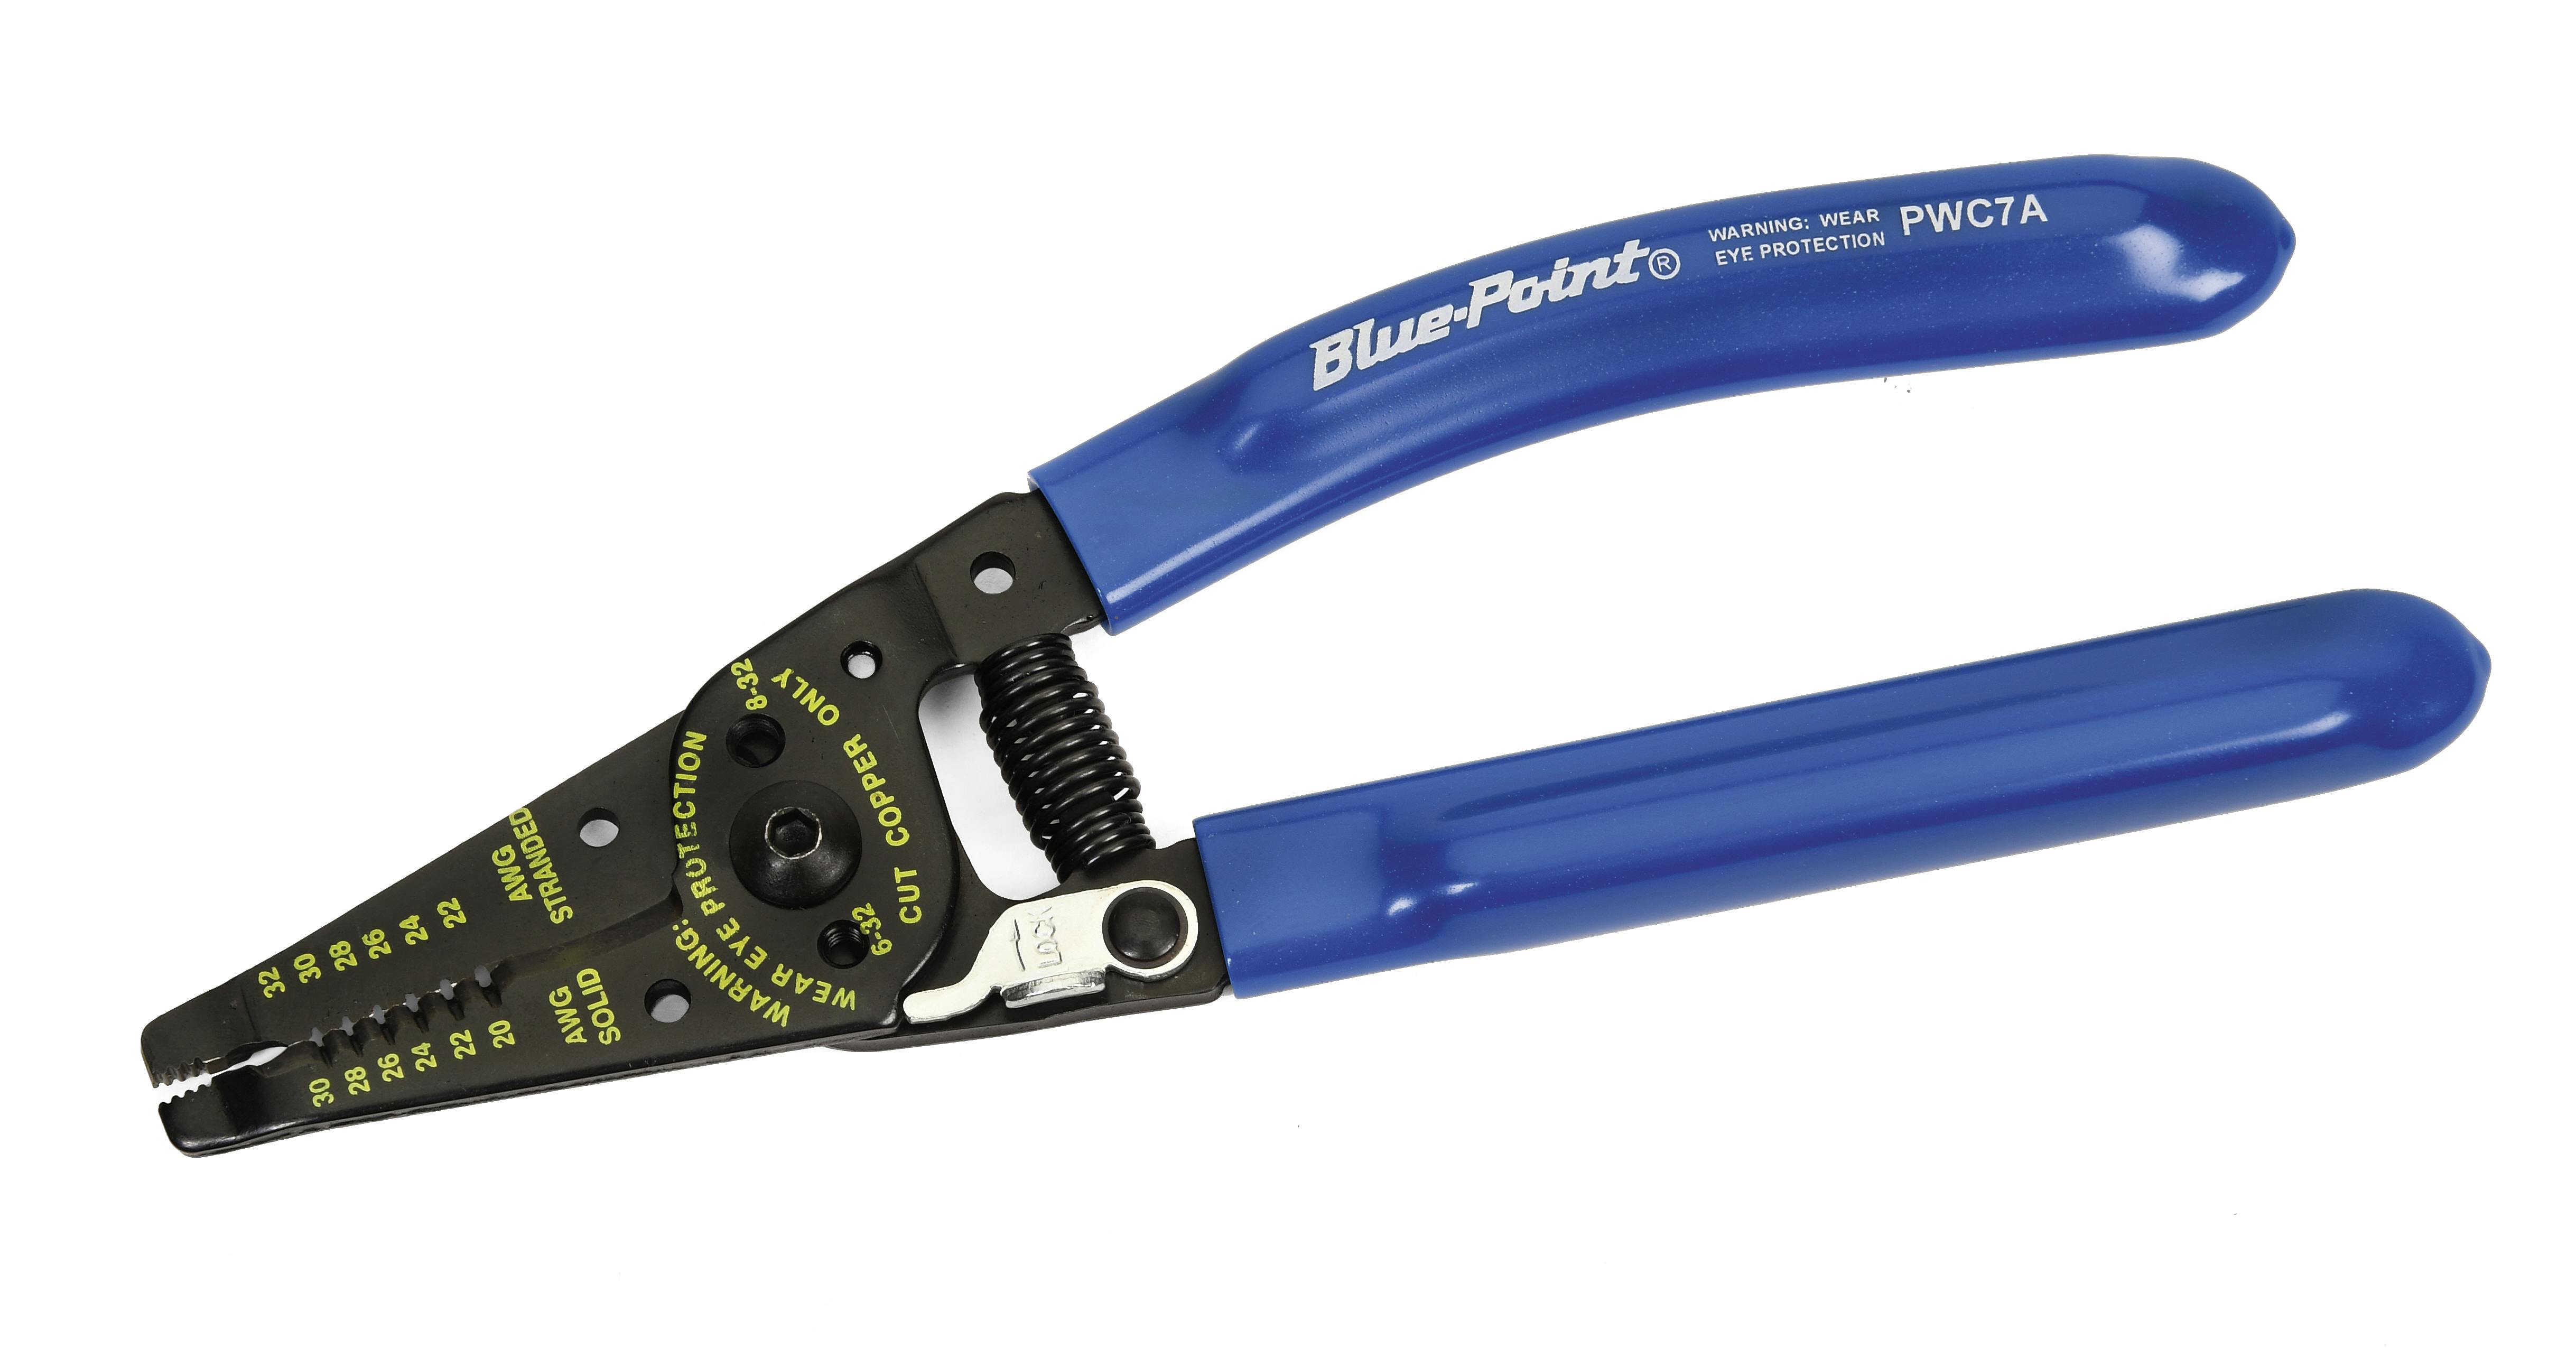 Wire Stripper/Cutter (Blue-Point®) (Blue), PWC7A